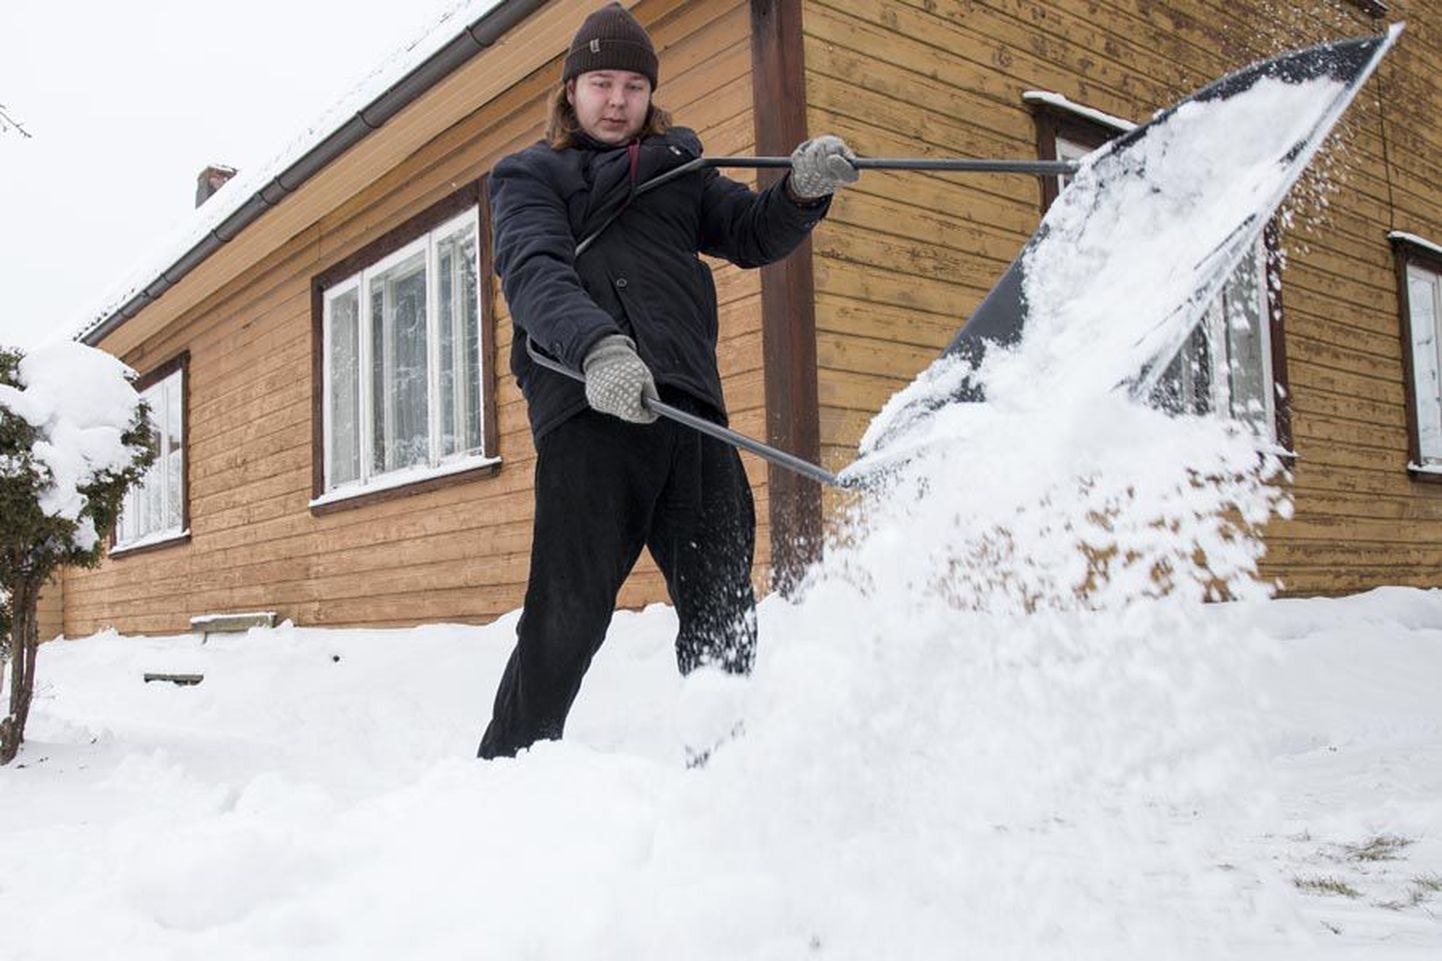 Kultuuriakadeemia tudeng Heikki Saabas teeb lumele kiiresti tuule alla.